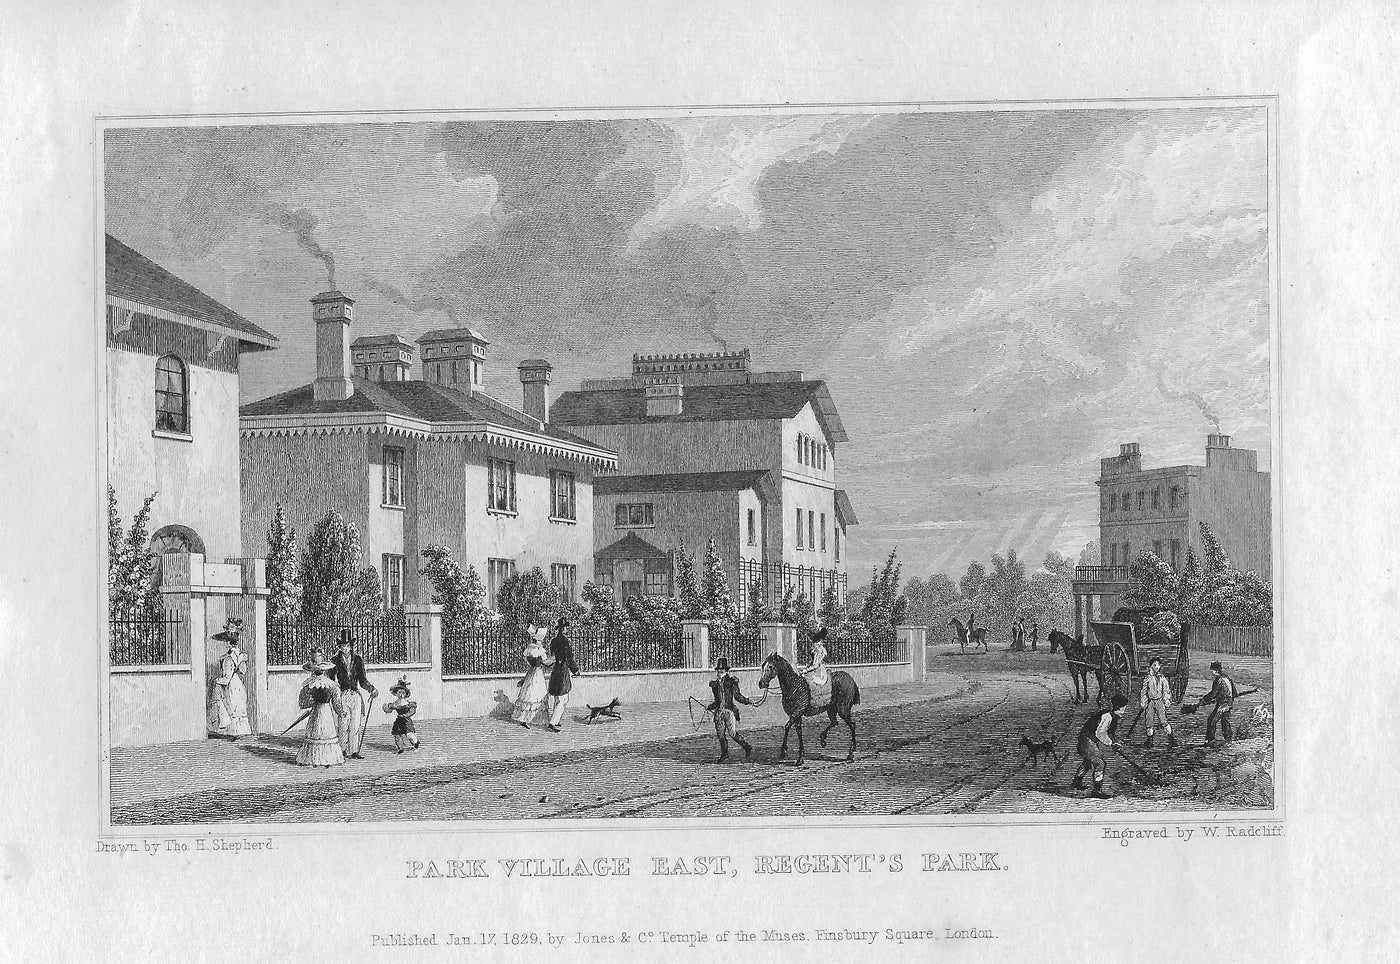 Park Village East Regent's Park London 1829, antique print published 1830.